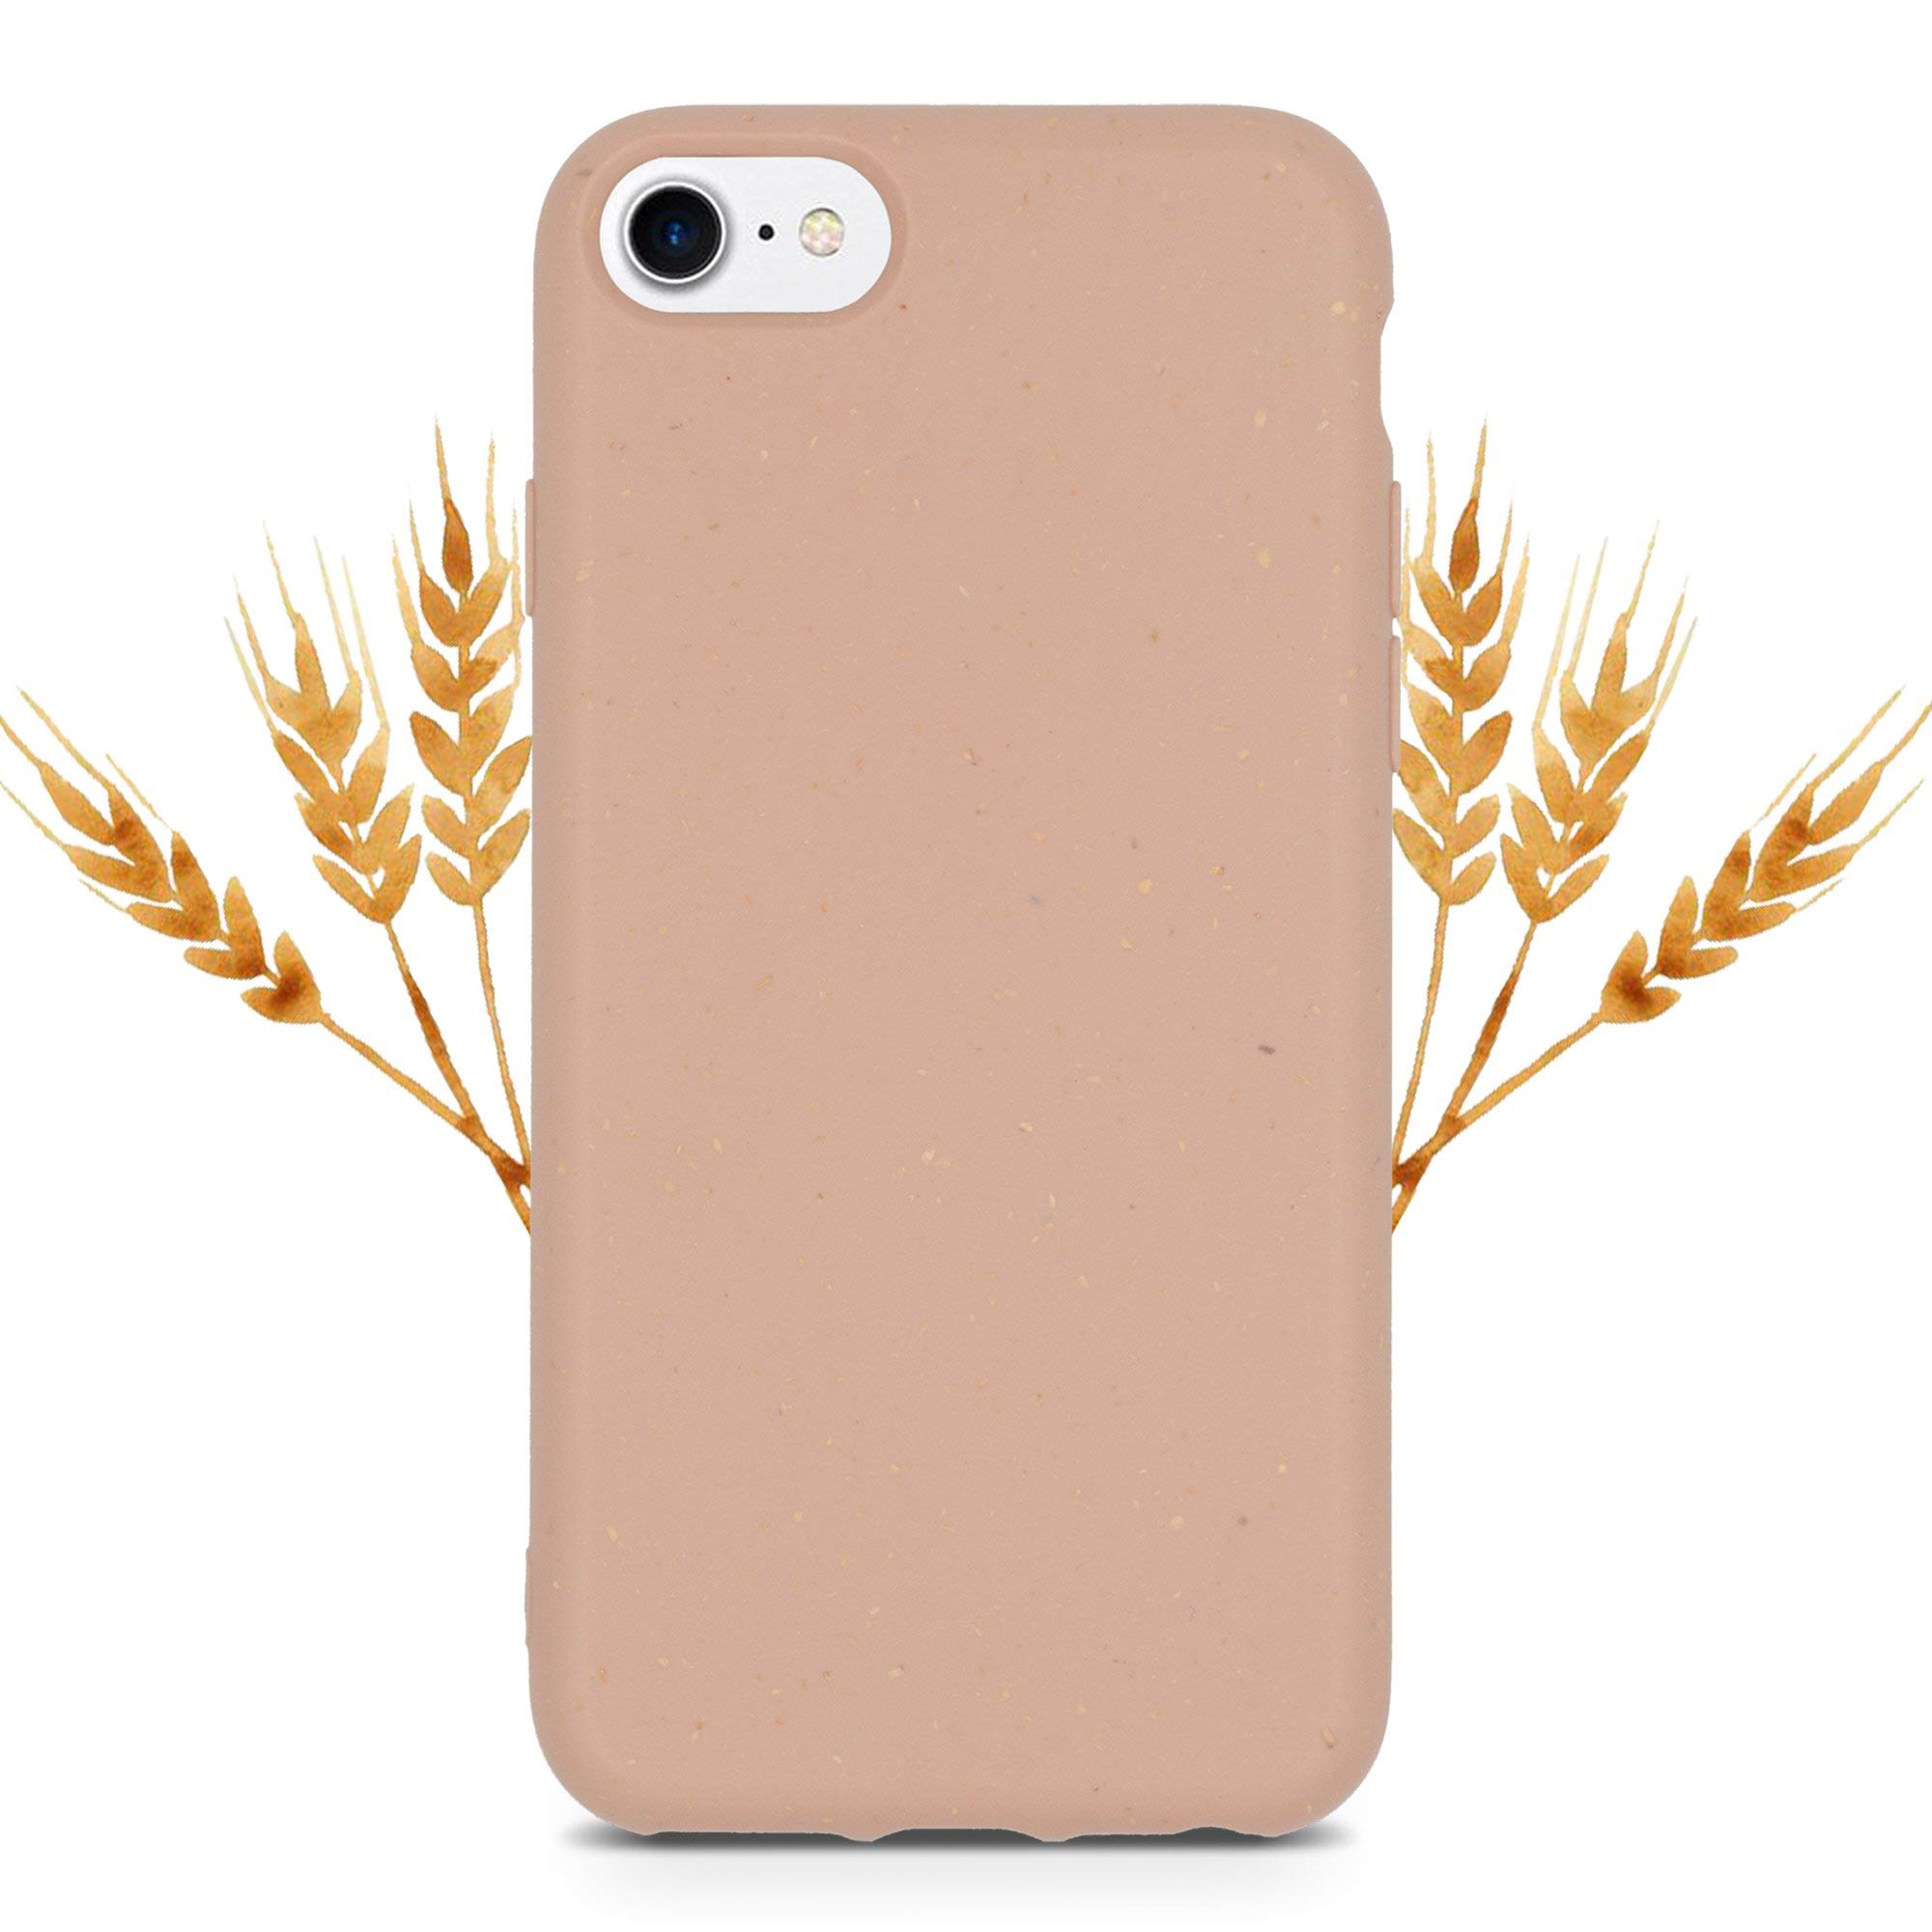 Funda para iPhone 7 rosa pastel con fondo de trigo